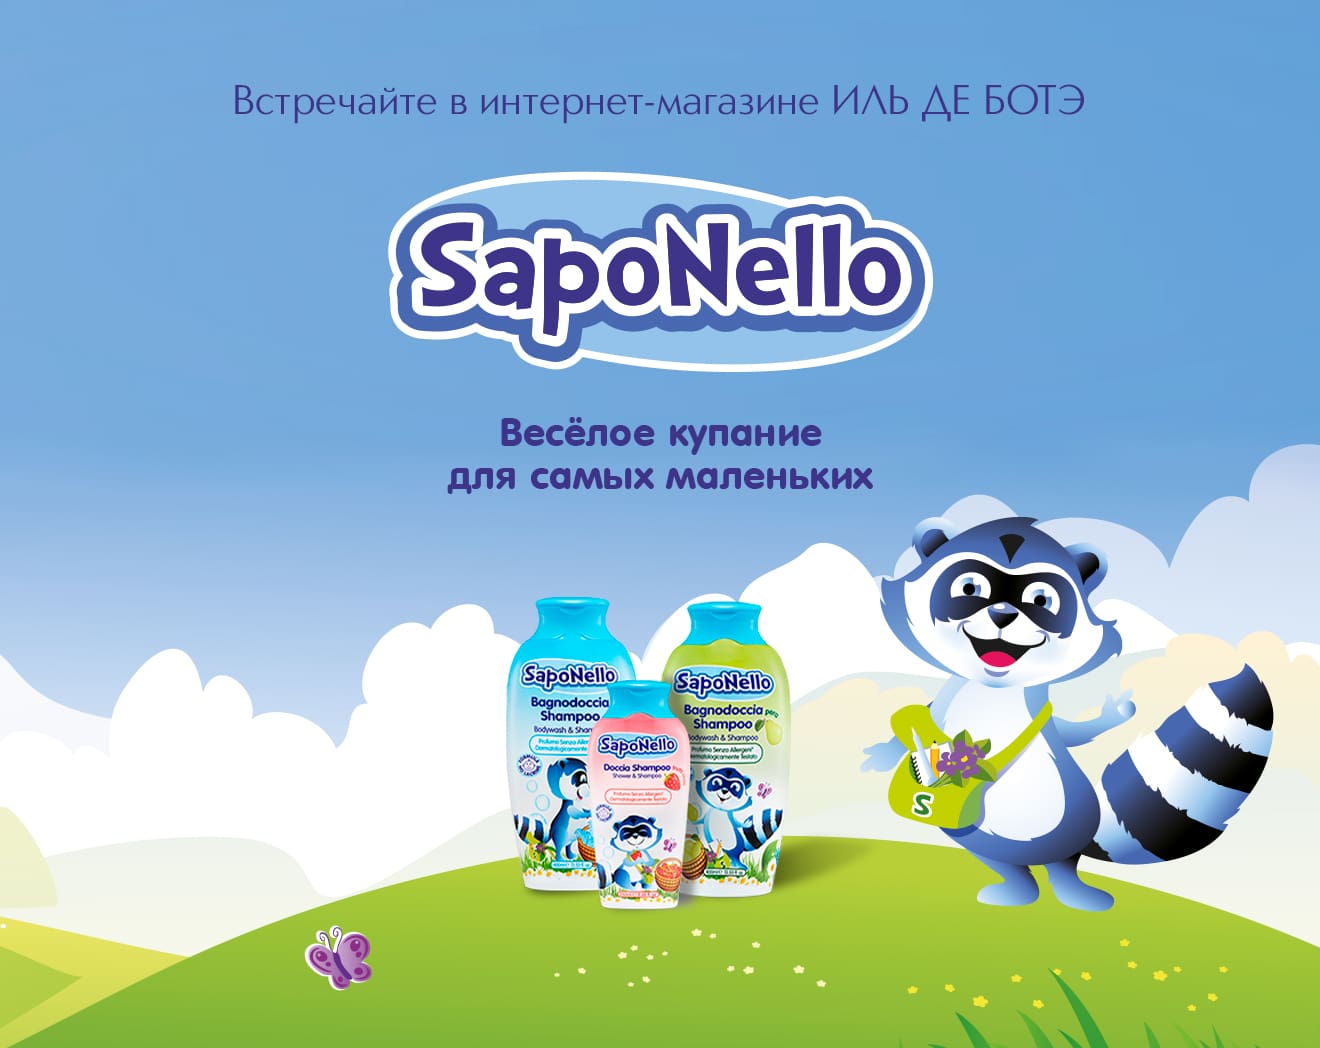 Встречайте новый бренд SAPONELLO в ИЛЬ ДЕ БОТЭ!